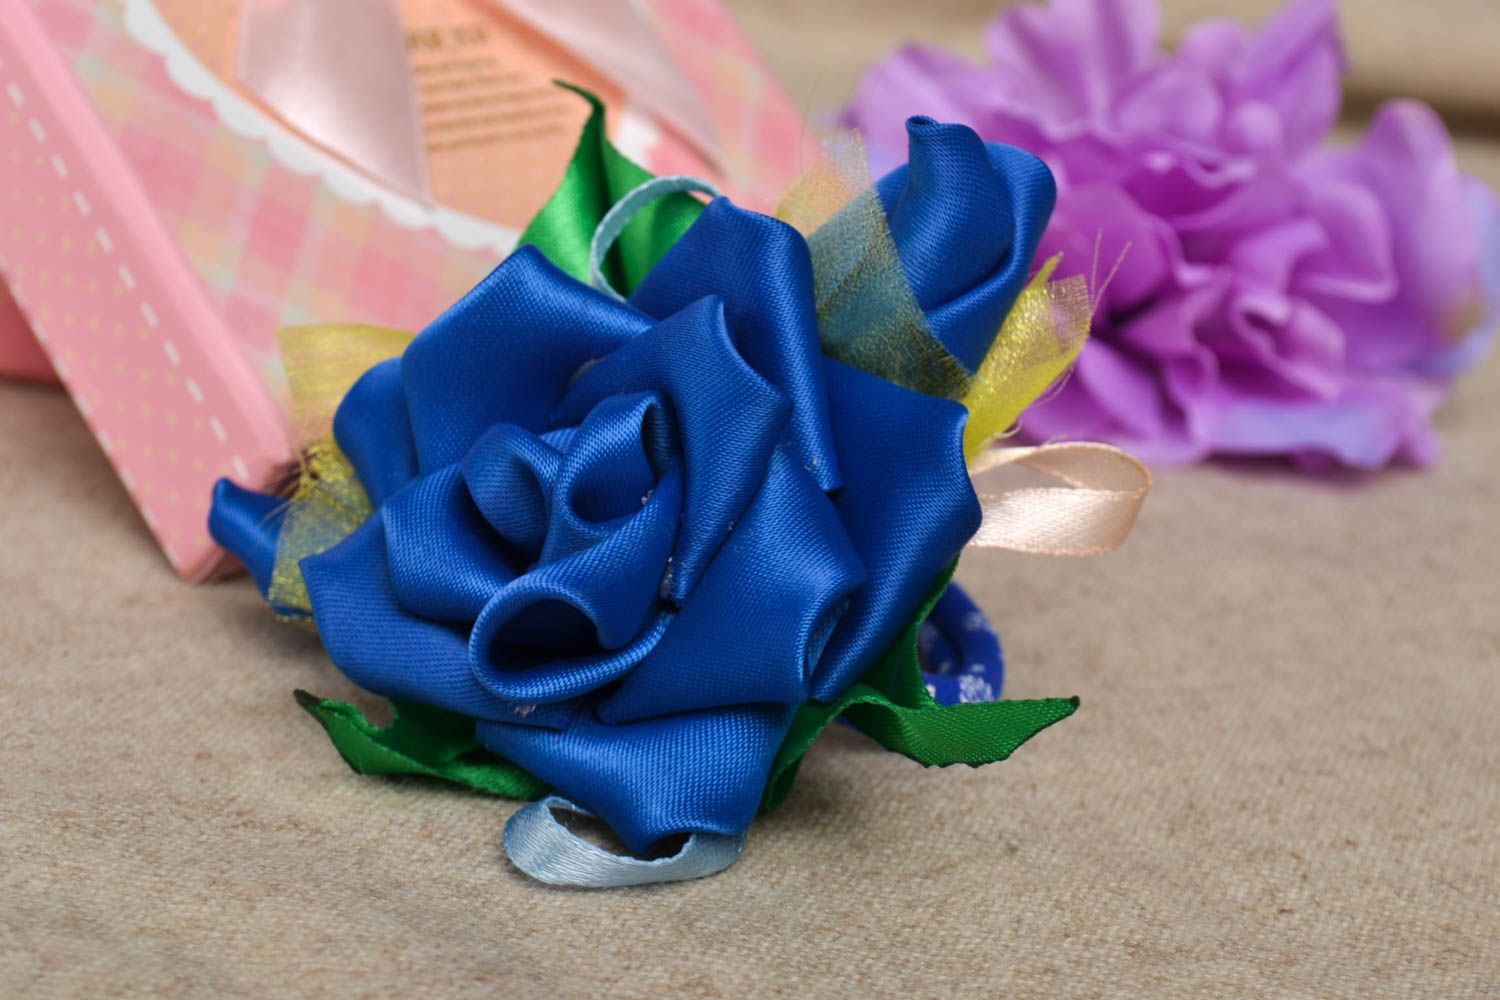 Аксессуар для волос ручной работы синяя резинка с цветком аксессуар для женщин фото 1